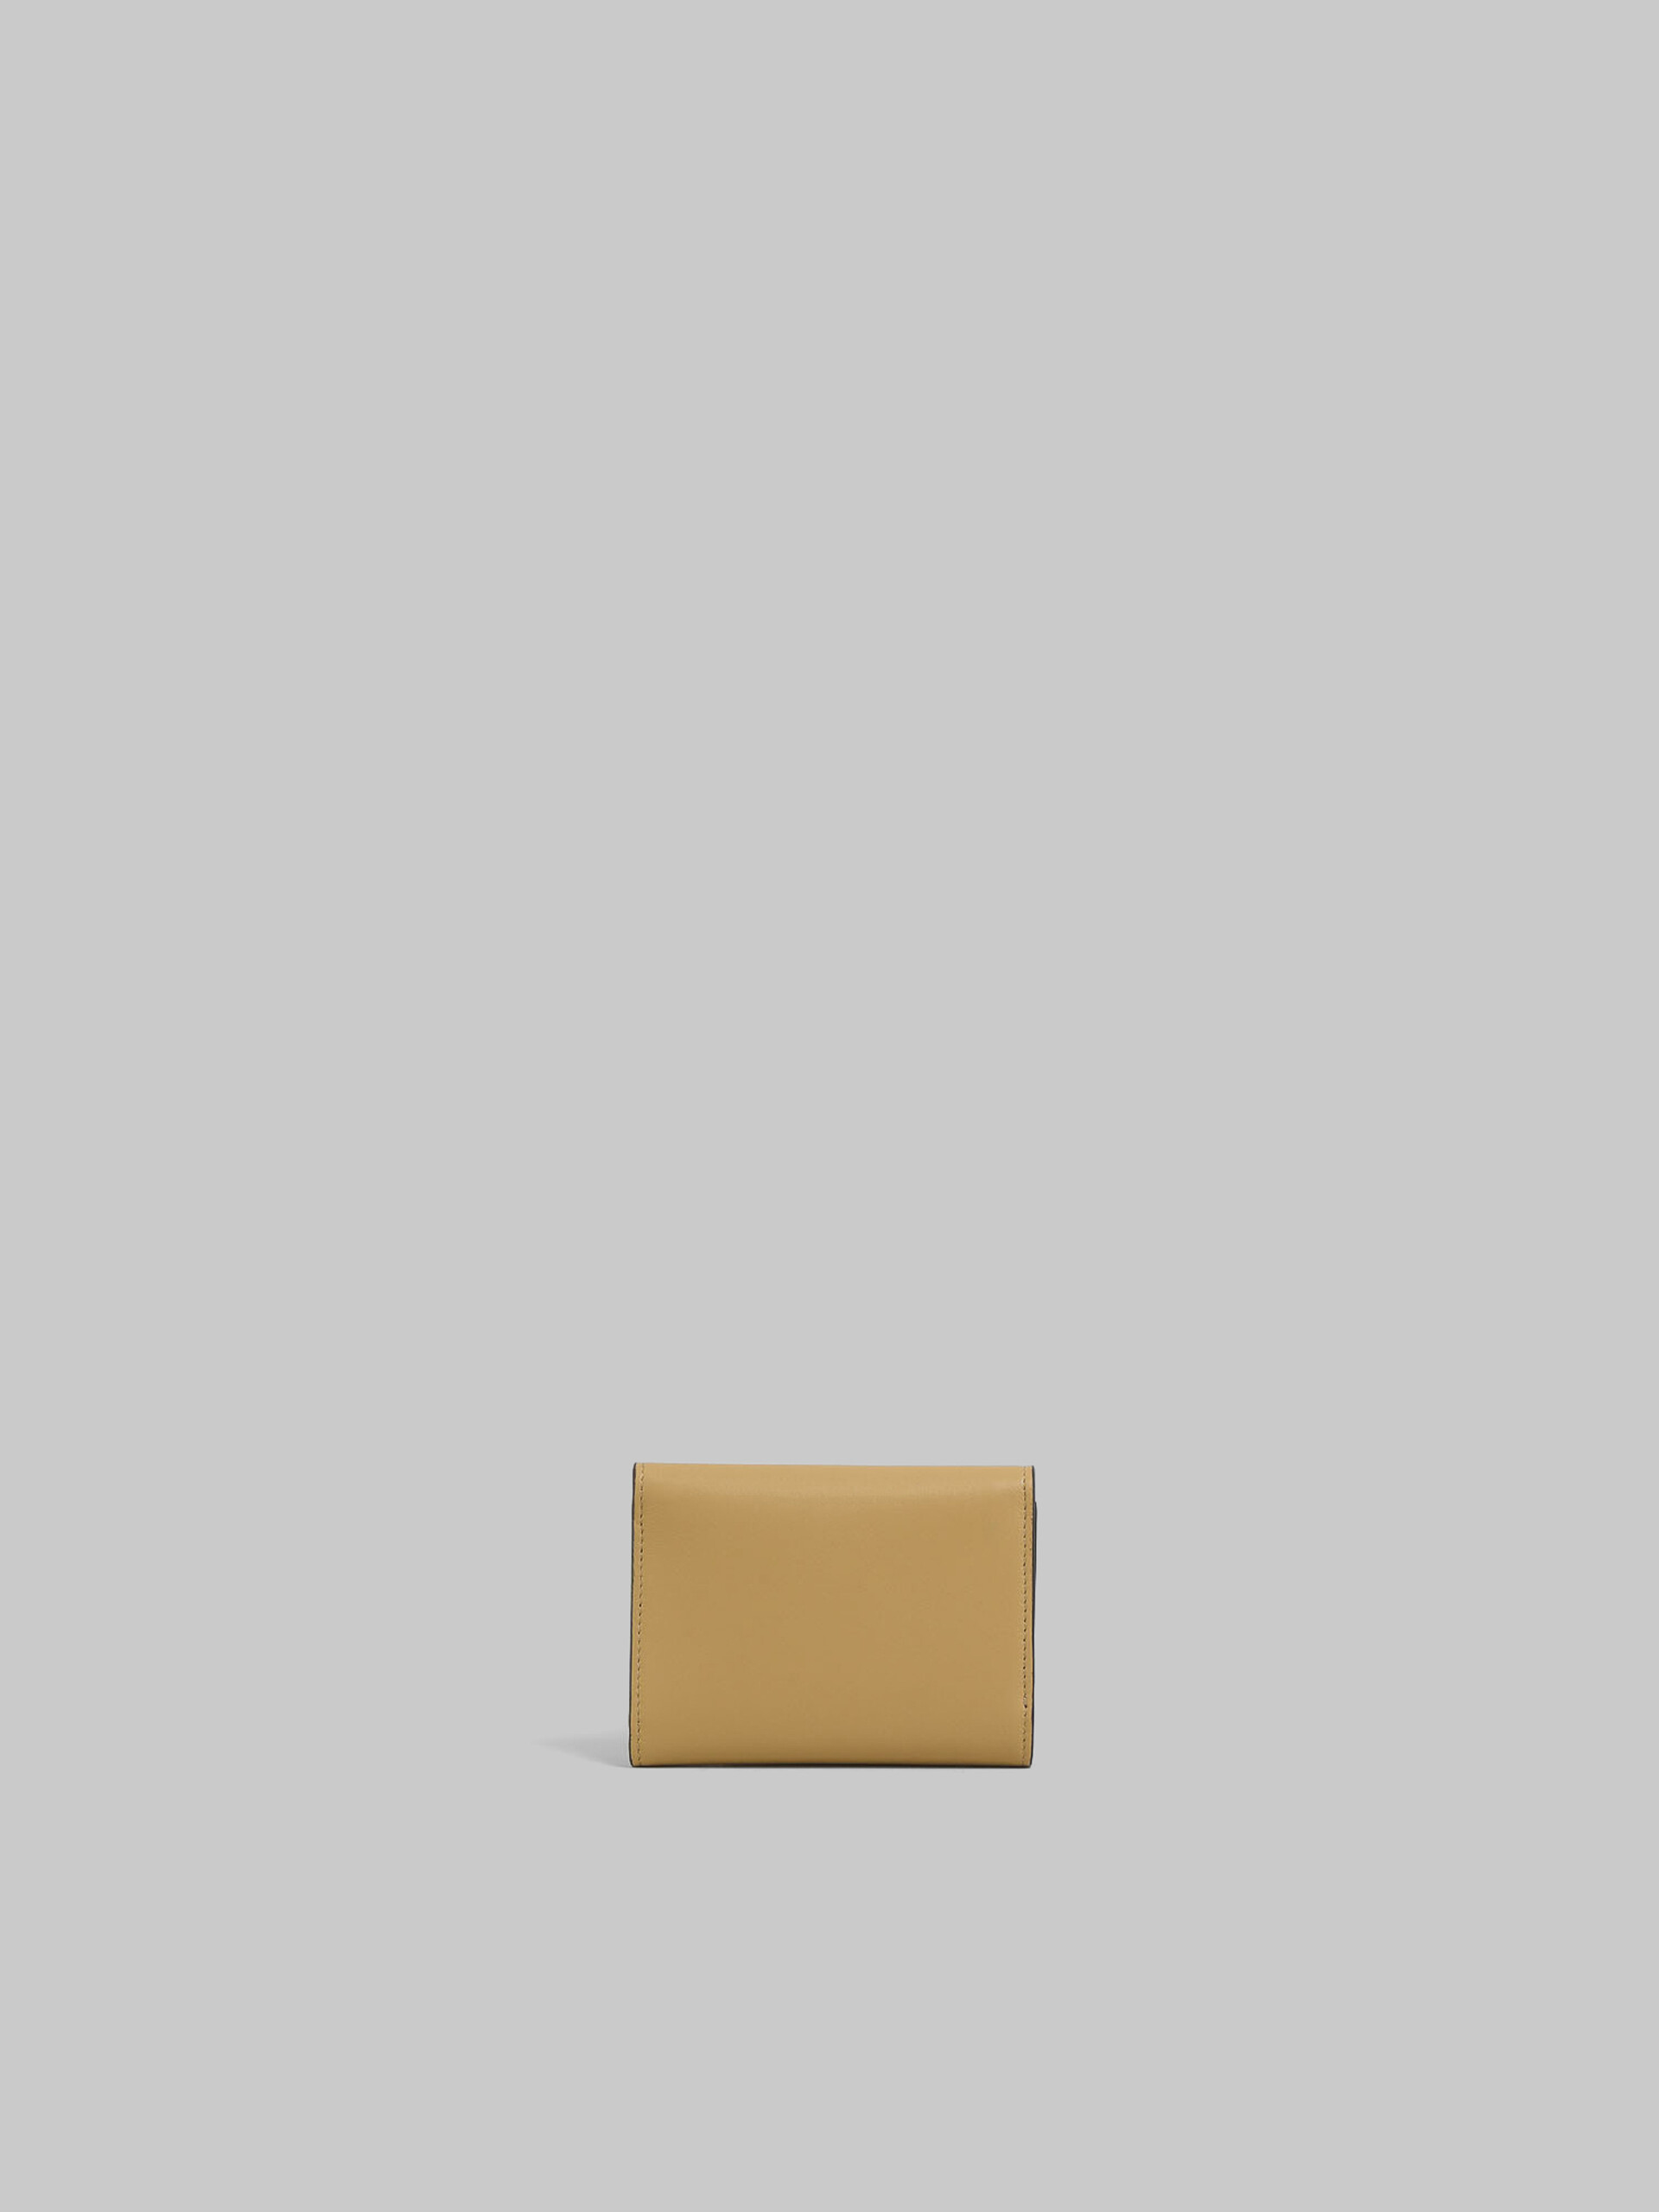 ブルー レザー製 Trunkaroo 三つ折りウォレット - 財布 - Image 3